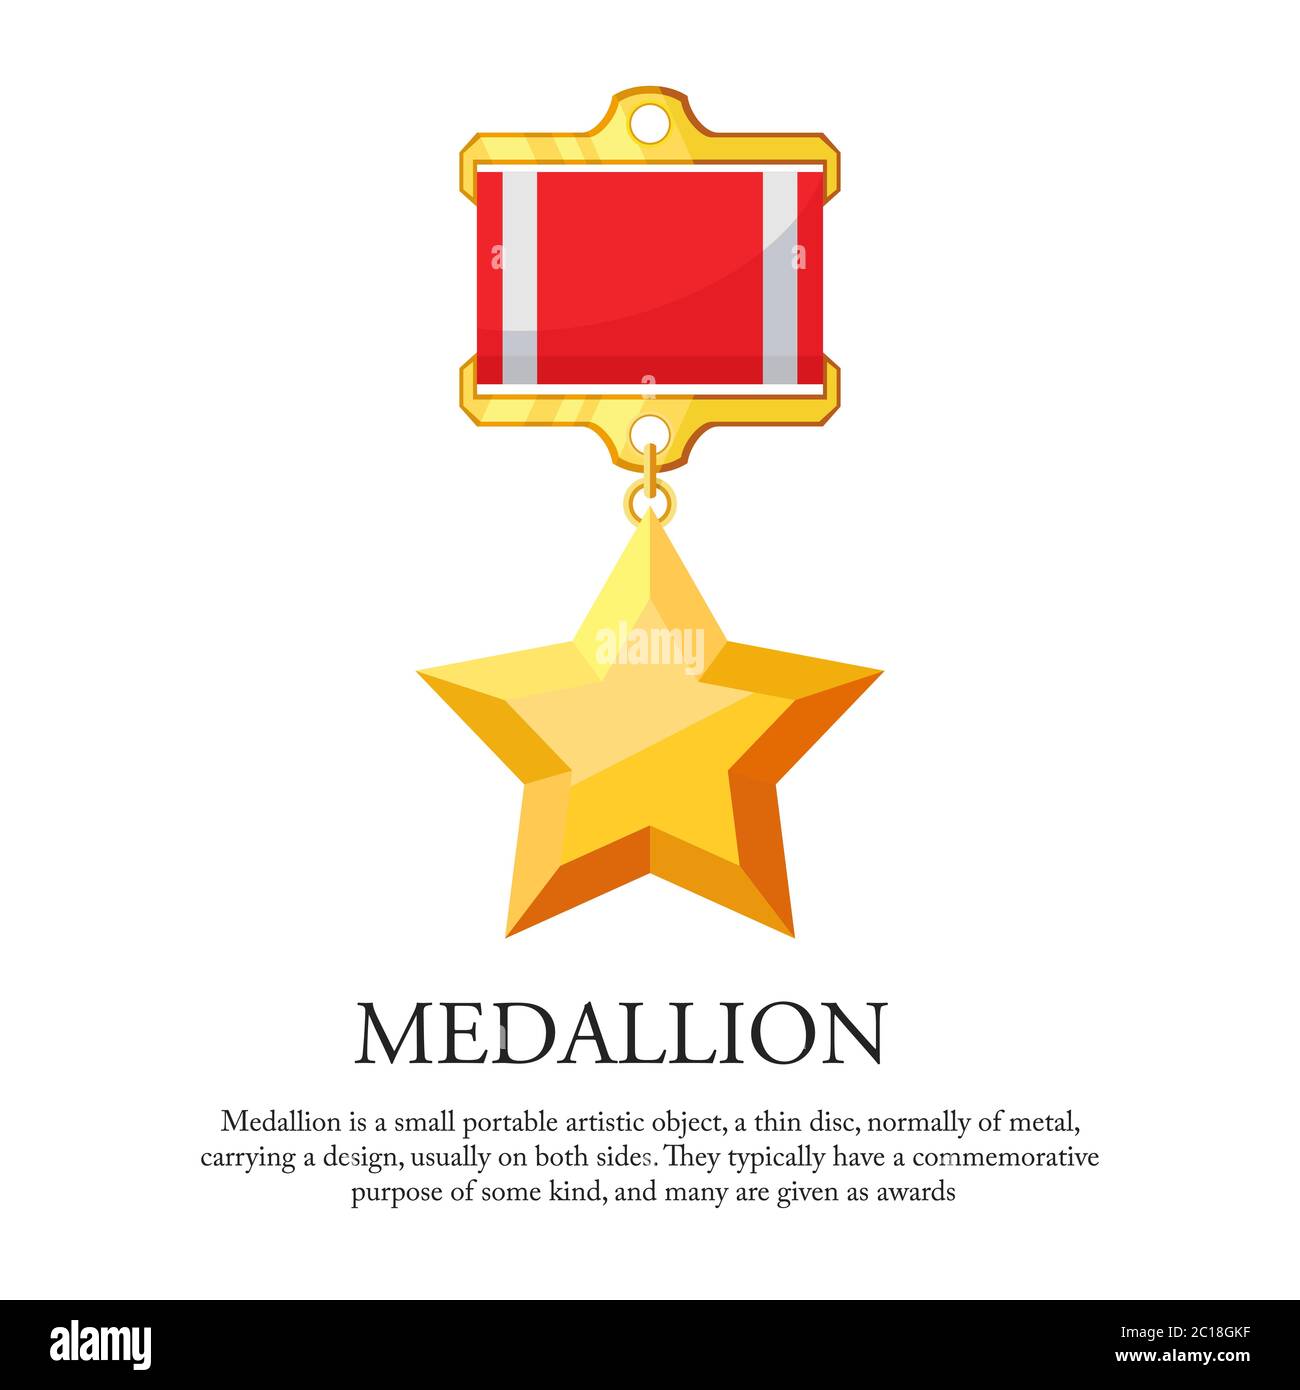 https://c8.alamy.com/compes/2c18gkf/ilustracion-vectorial-de-una-medalla-de-estrella-adecuado-para-visualizaciones-de-medallas-de-oro-ganadores-de-premios-mejor-reconocimiento-y-premio-de-servicio-de-medalla-icono-2c18gkf.jpg